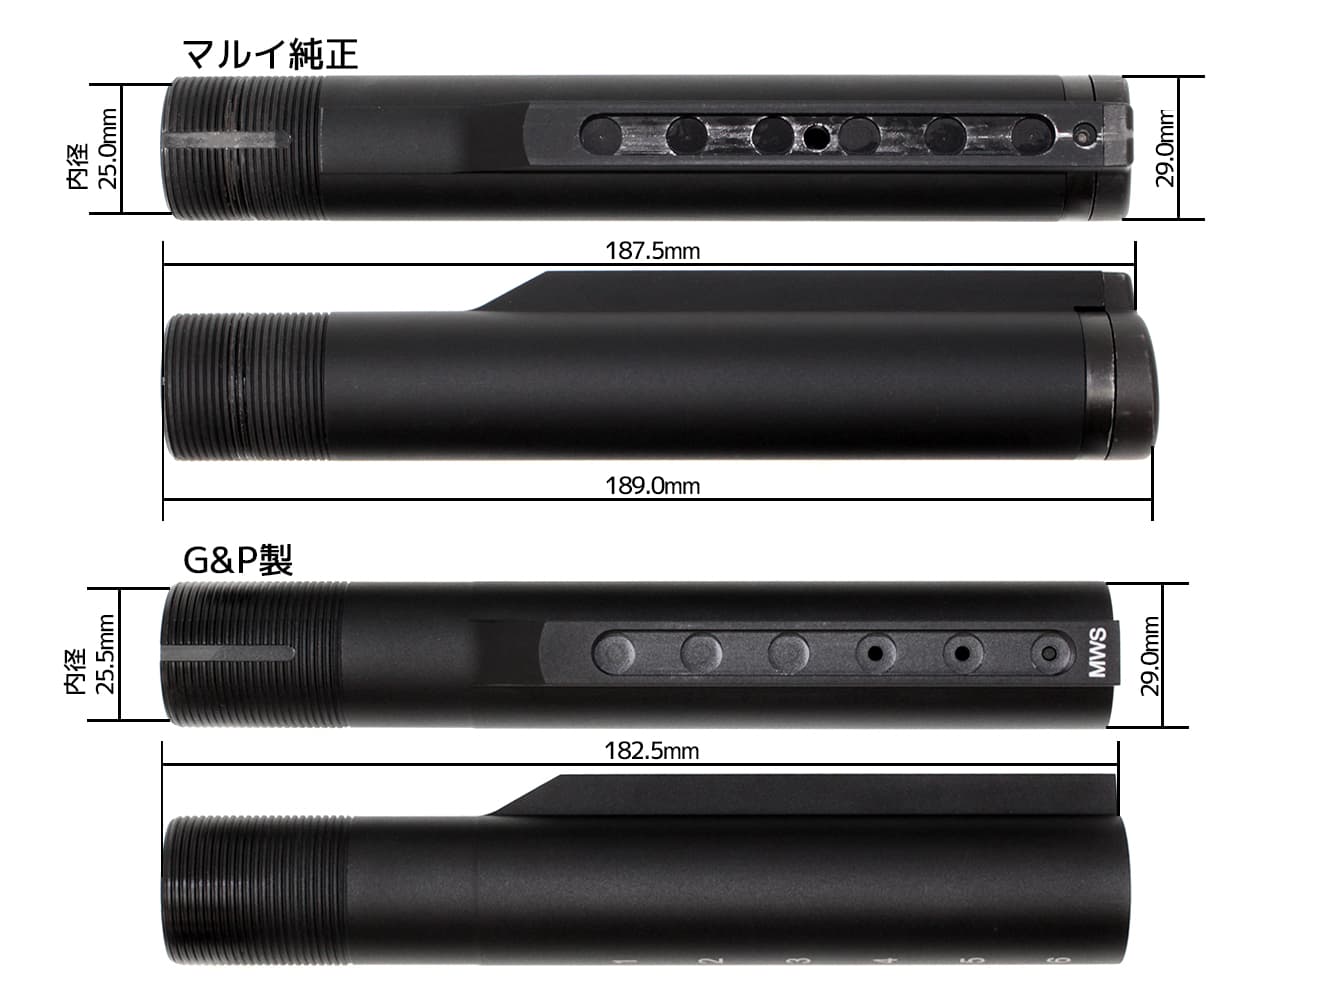 G&P アルミCNC バッファチューブ 6P BK for 東京マルイ GBB M4